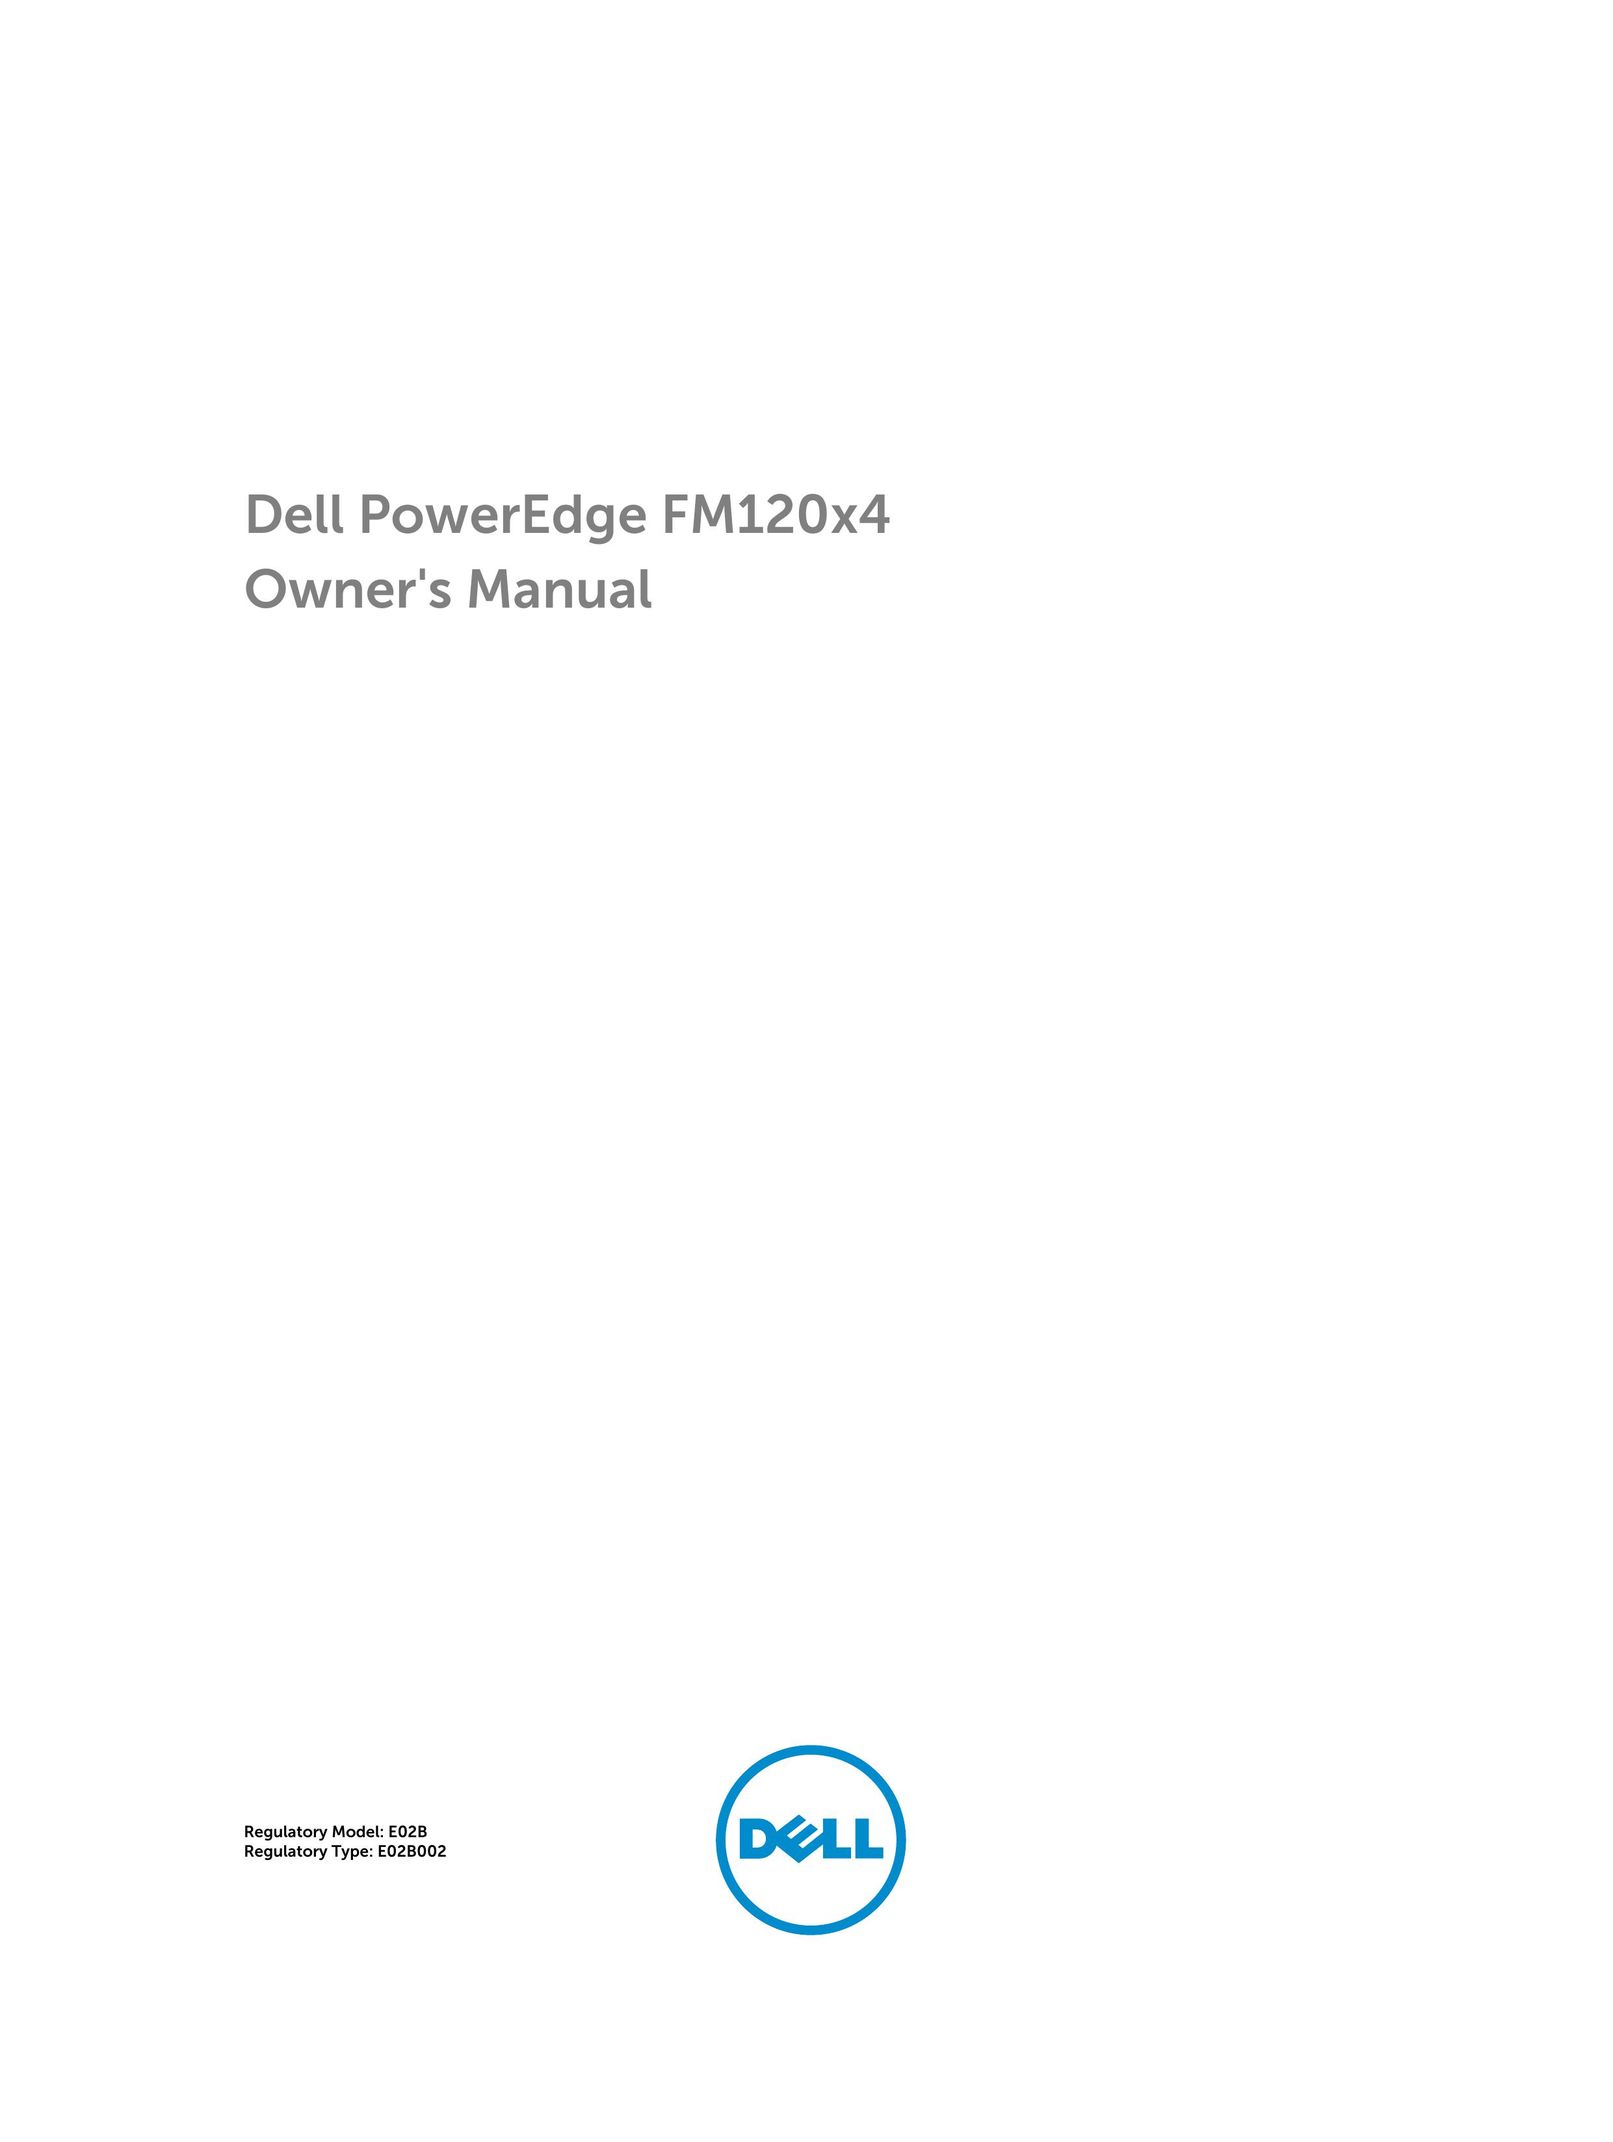 Dell FM120x4 Home Theater Server User Manual